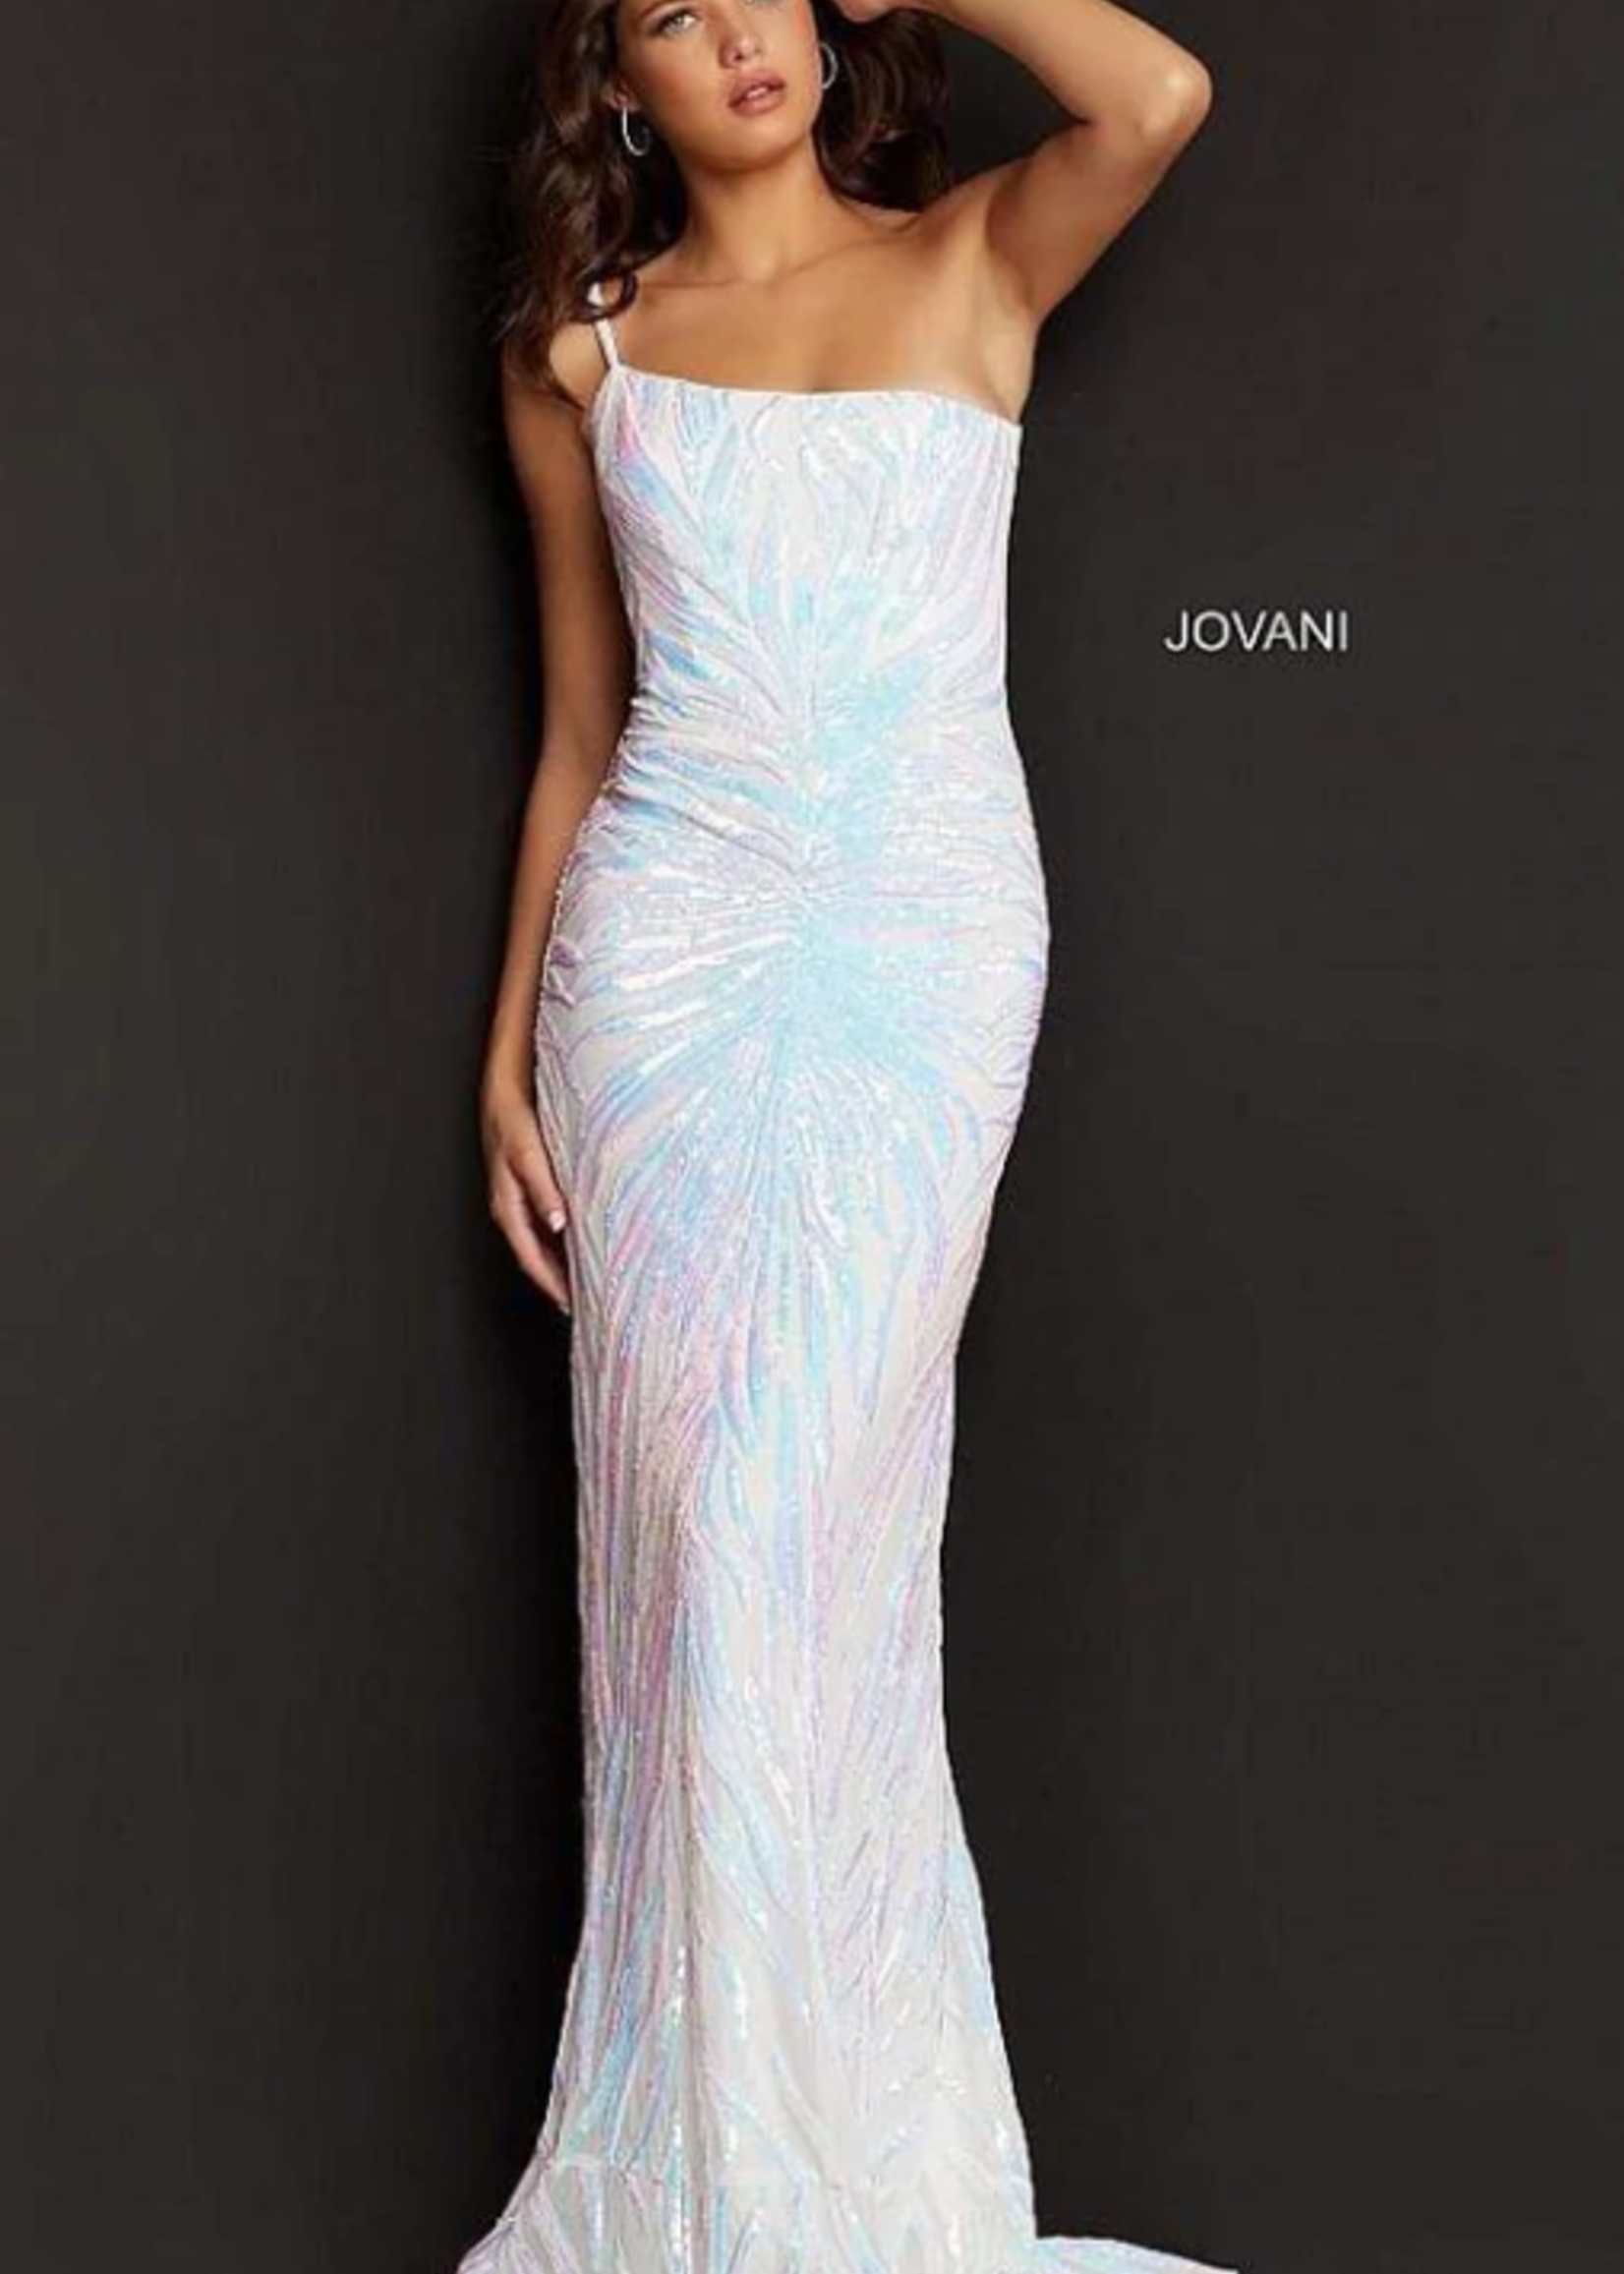 Jovani Dream a Dream Iridescent Formal Dress (3 Colors)